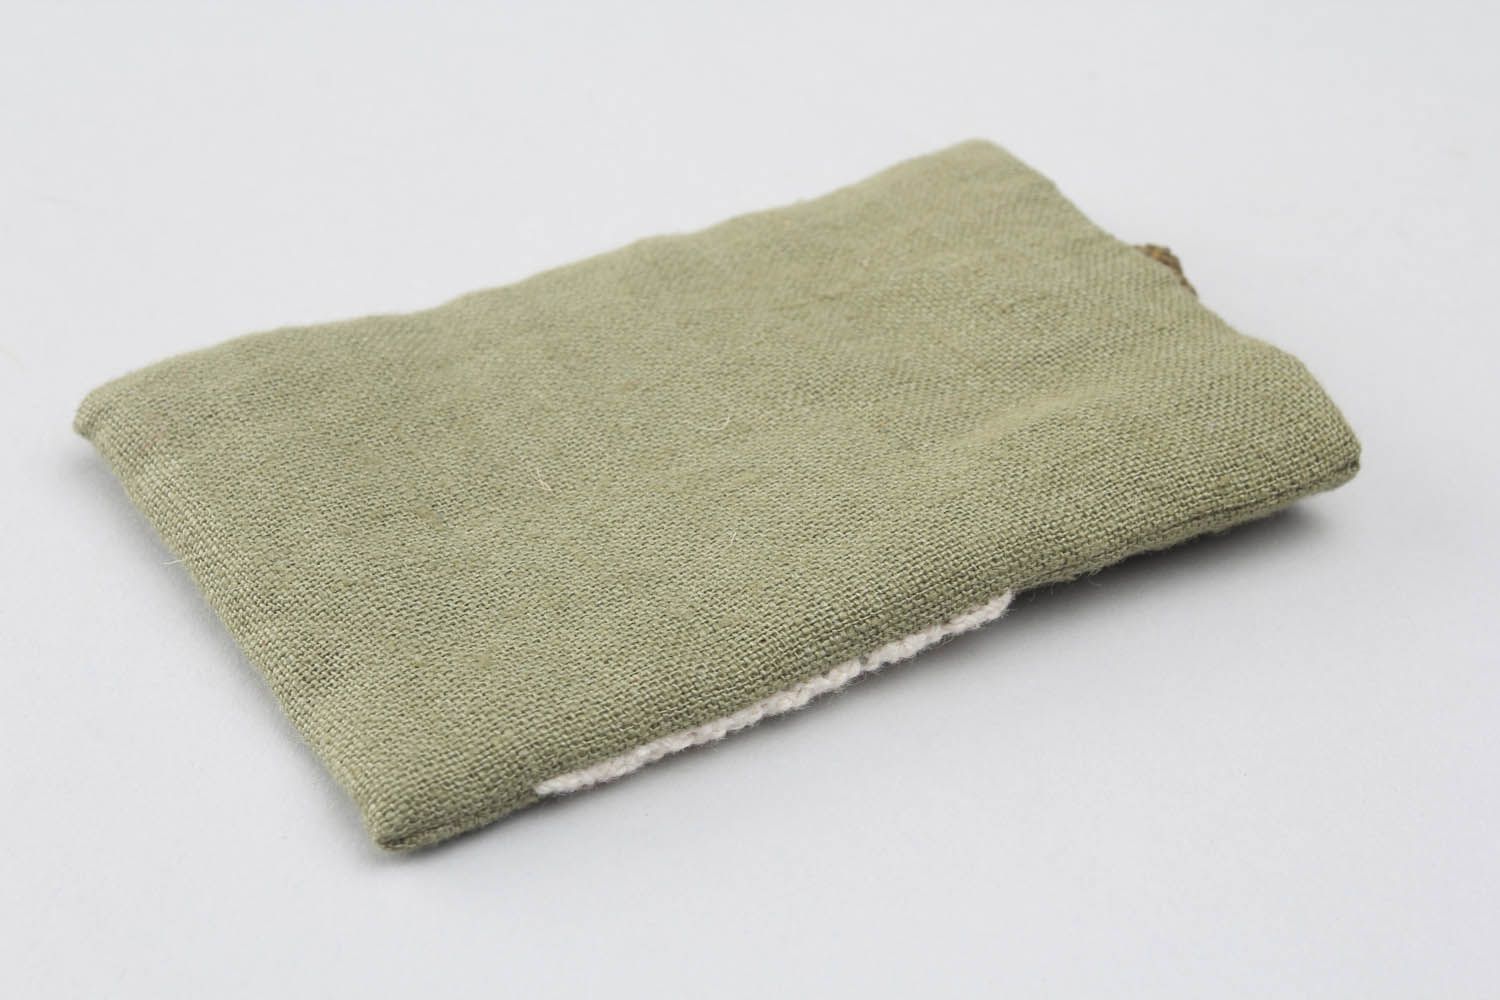 Housse-chaussette pour téléphone en tissu vert faite main photo 4